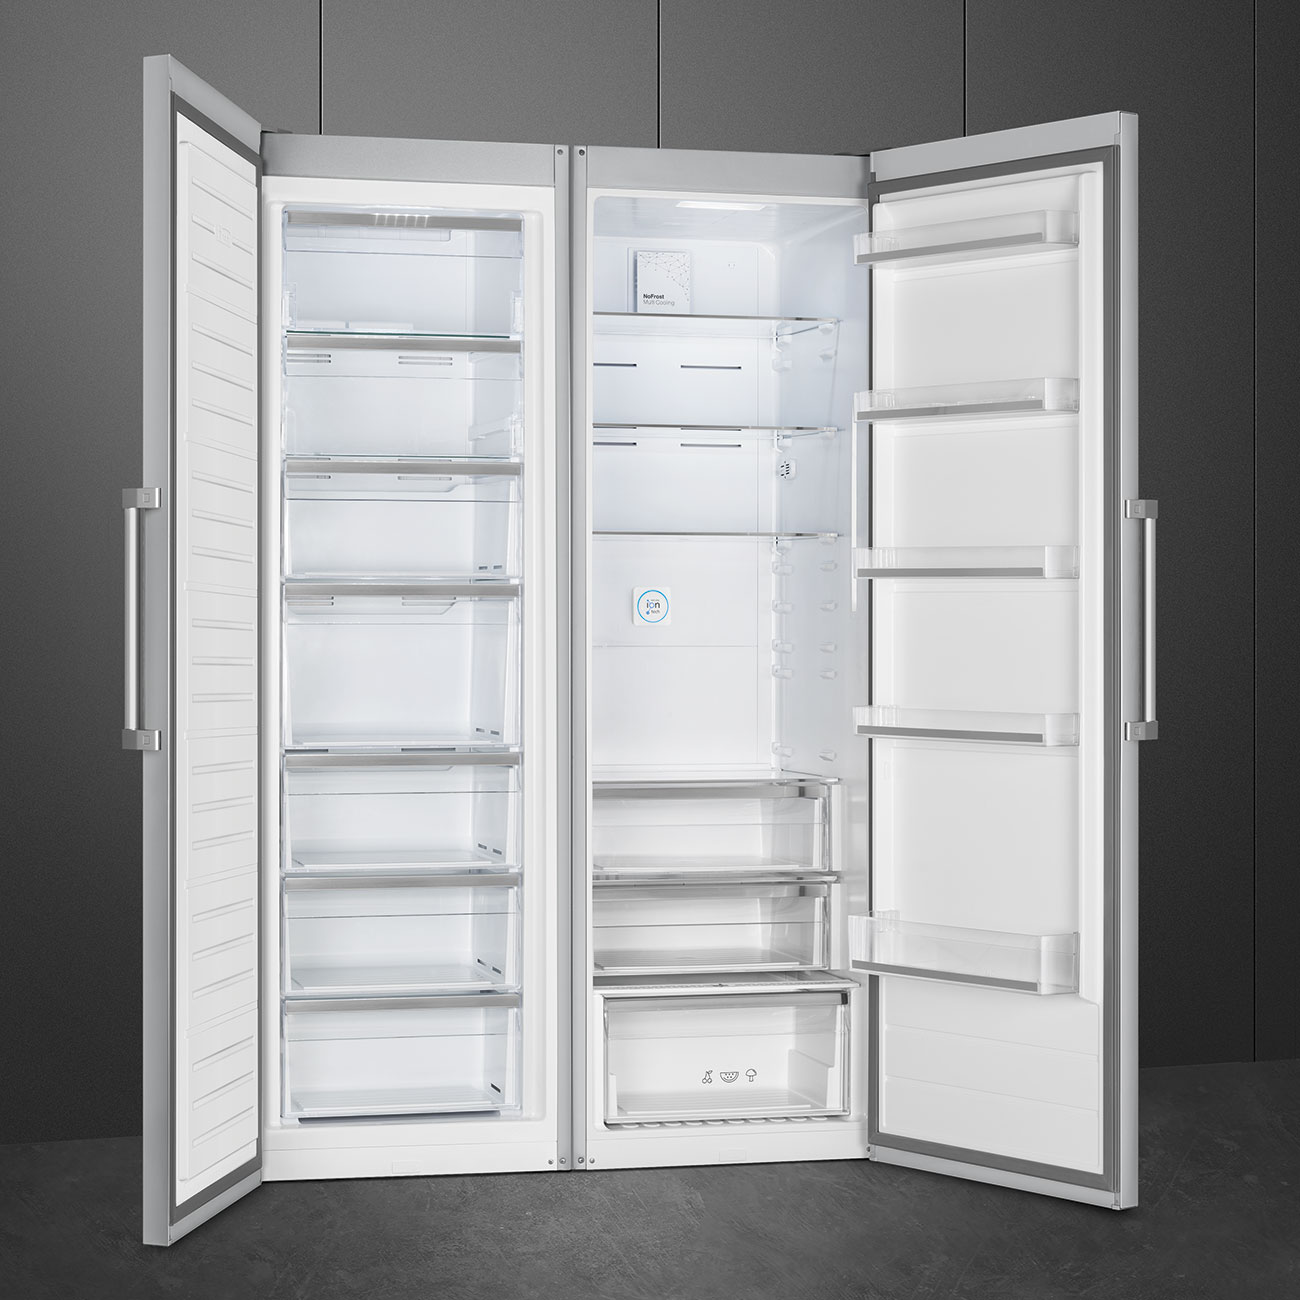 Single door Free Standing freezer- Smeg_3